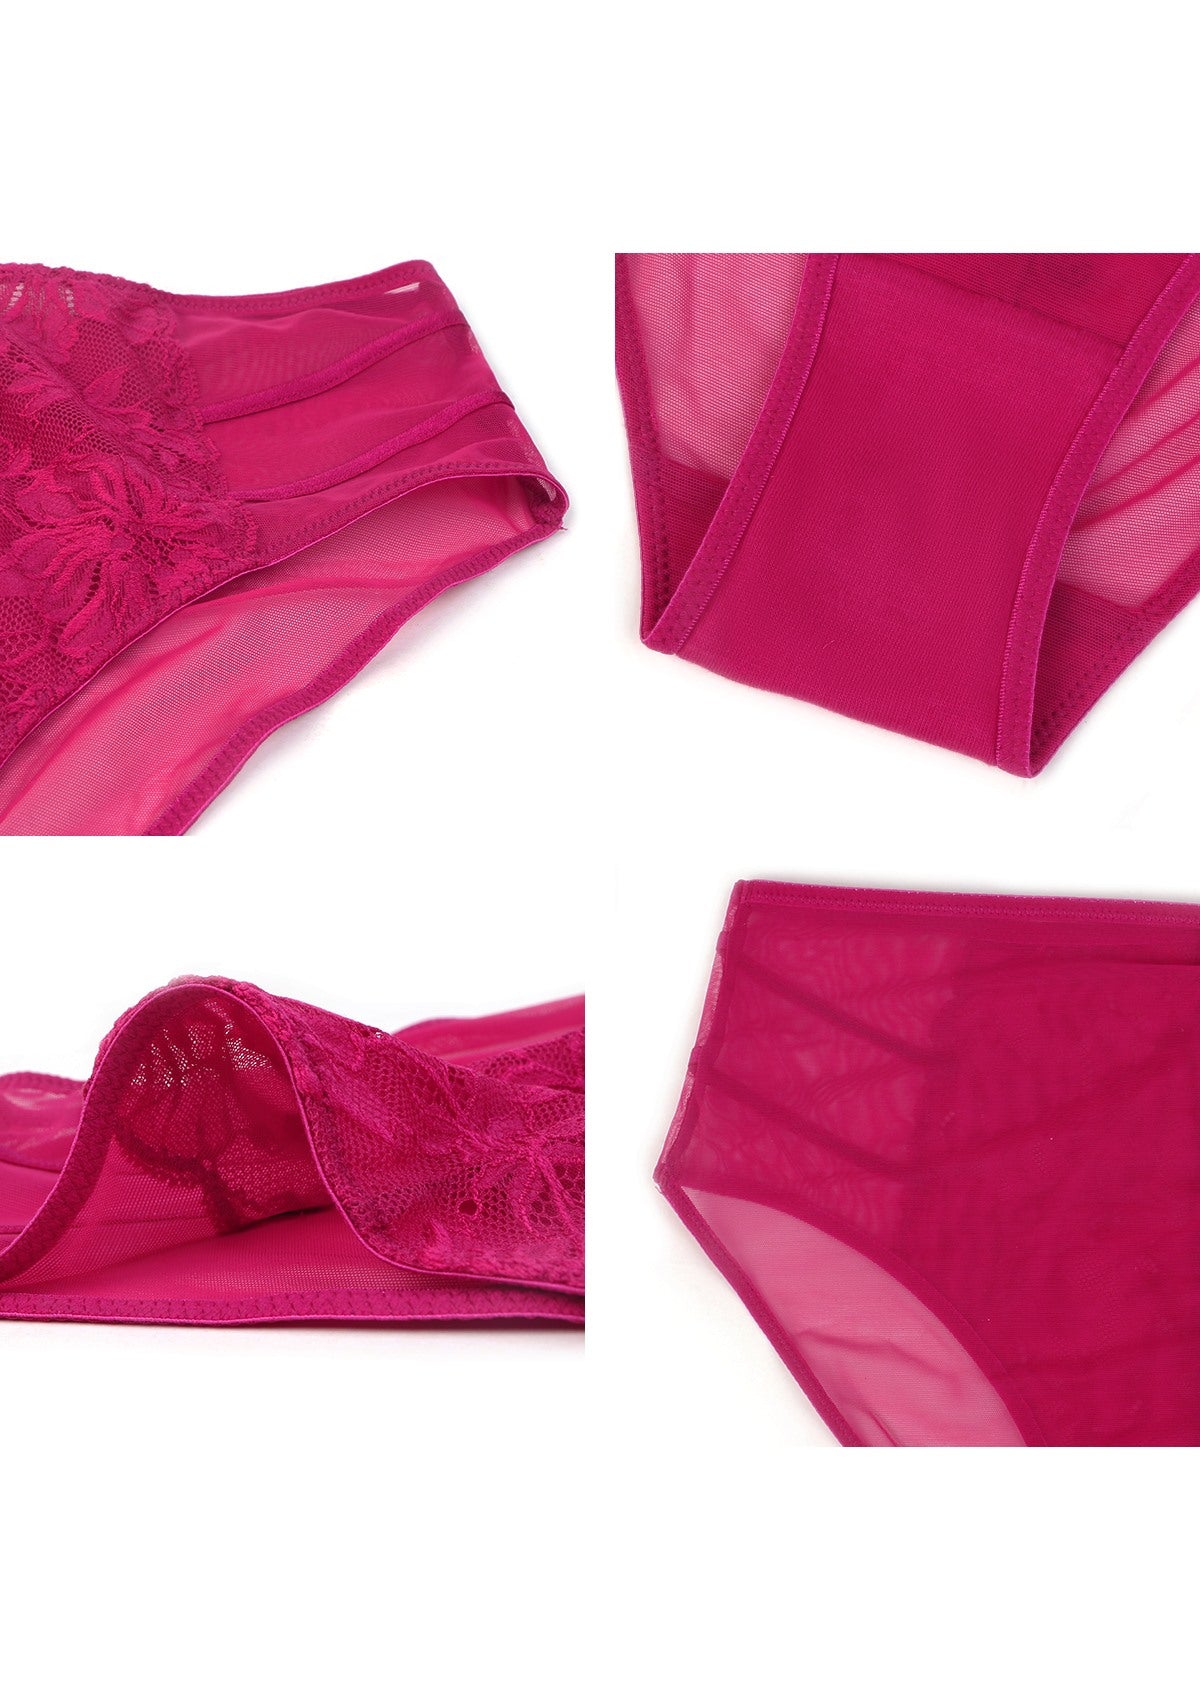 HSIA Pretty In Petals Mid-Rise Sexy Lace Everyday Underwear  - XL / Bikini / Red